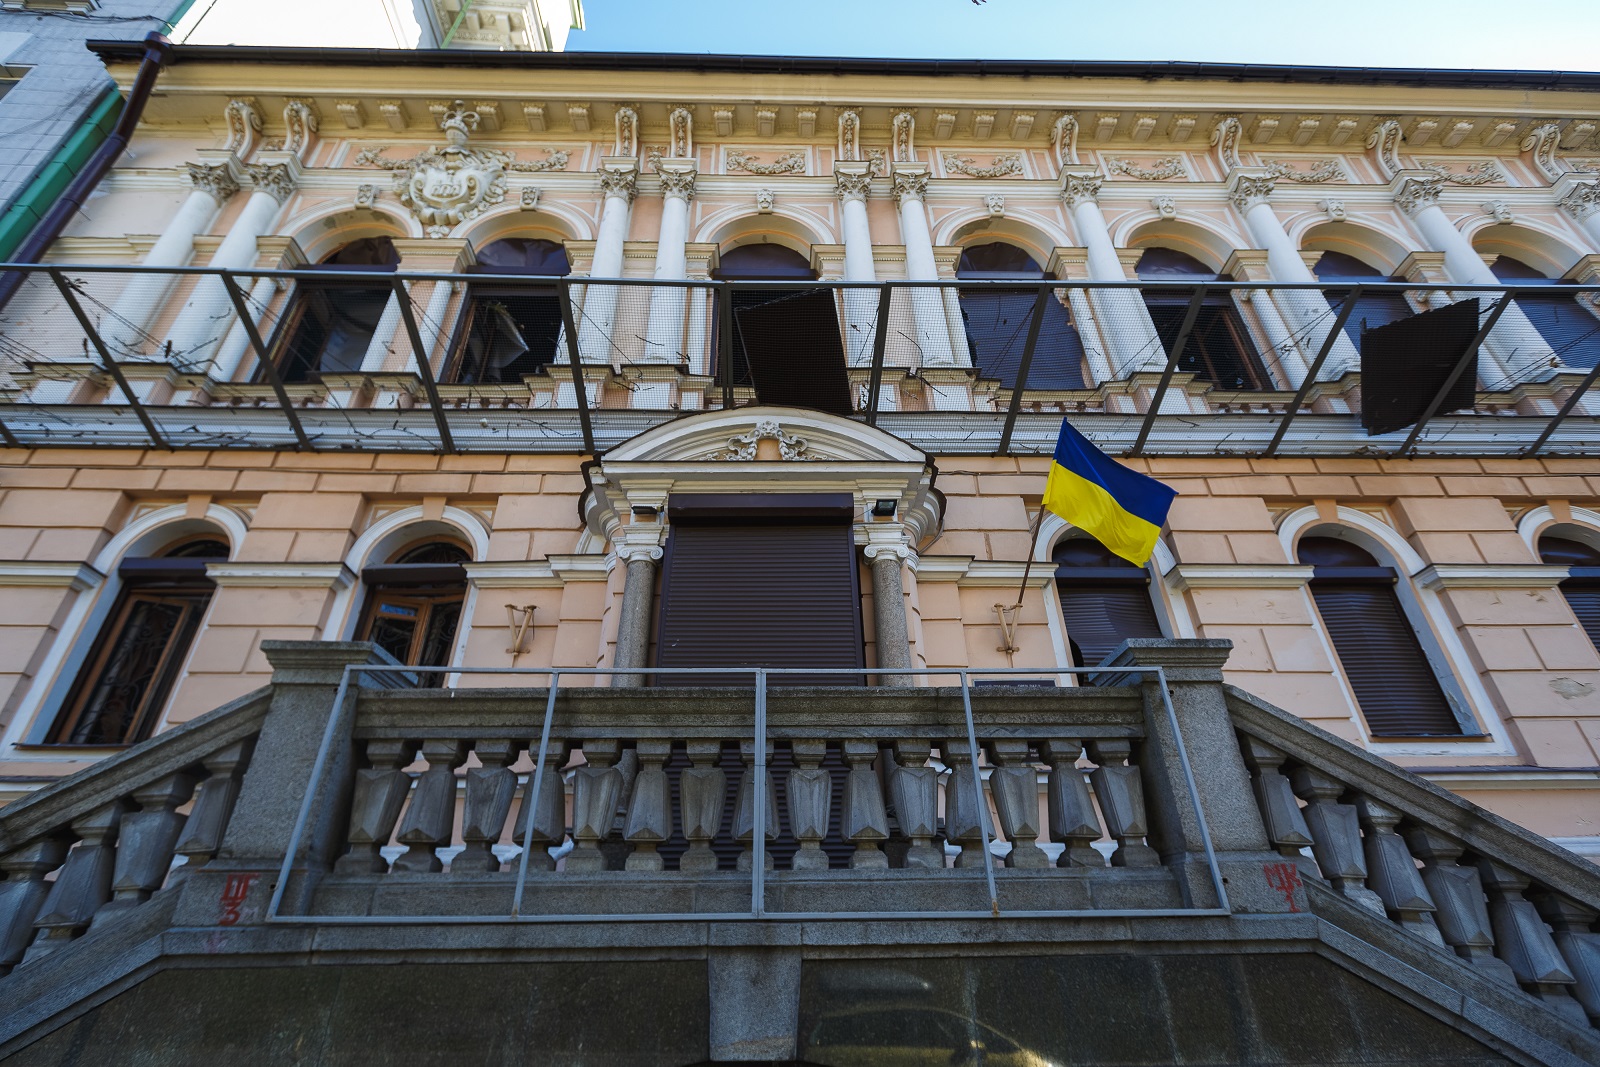 Eingang des Khanenko Museums in Kiew: neben dem geschlossenen Eingang hängt die ukrainische Flagge, einige Fenster sind geöffnet, andere mit Rollläden verschlossen. Zwischen den beiden Etagen ist ein Netz gespannt, auf dem zwei große dunkle Bretter liegen, die ursprünglich die Fenster verschlossen hatten.